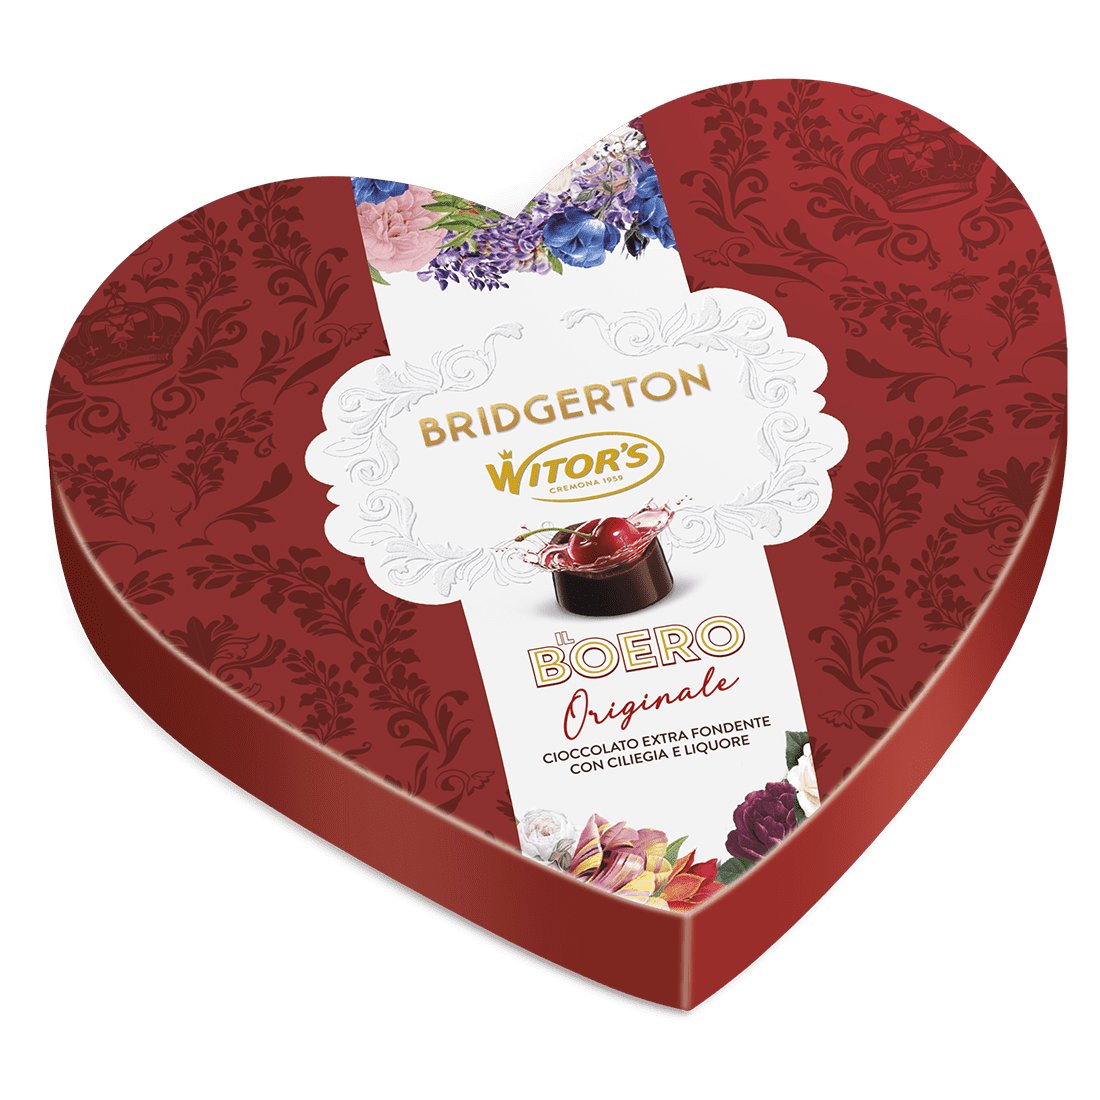 Una scatola di cioccolatini con dedica per la tua dolce metà